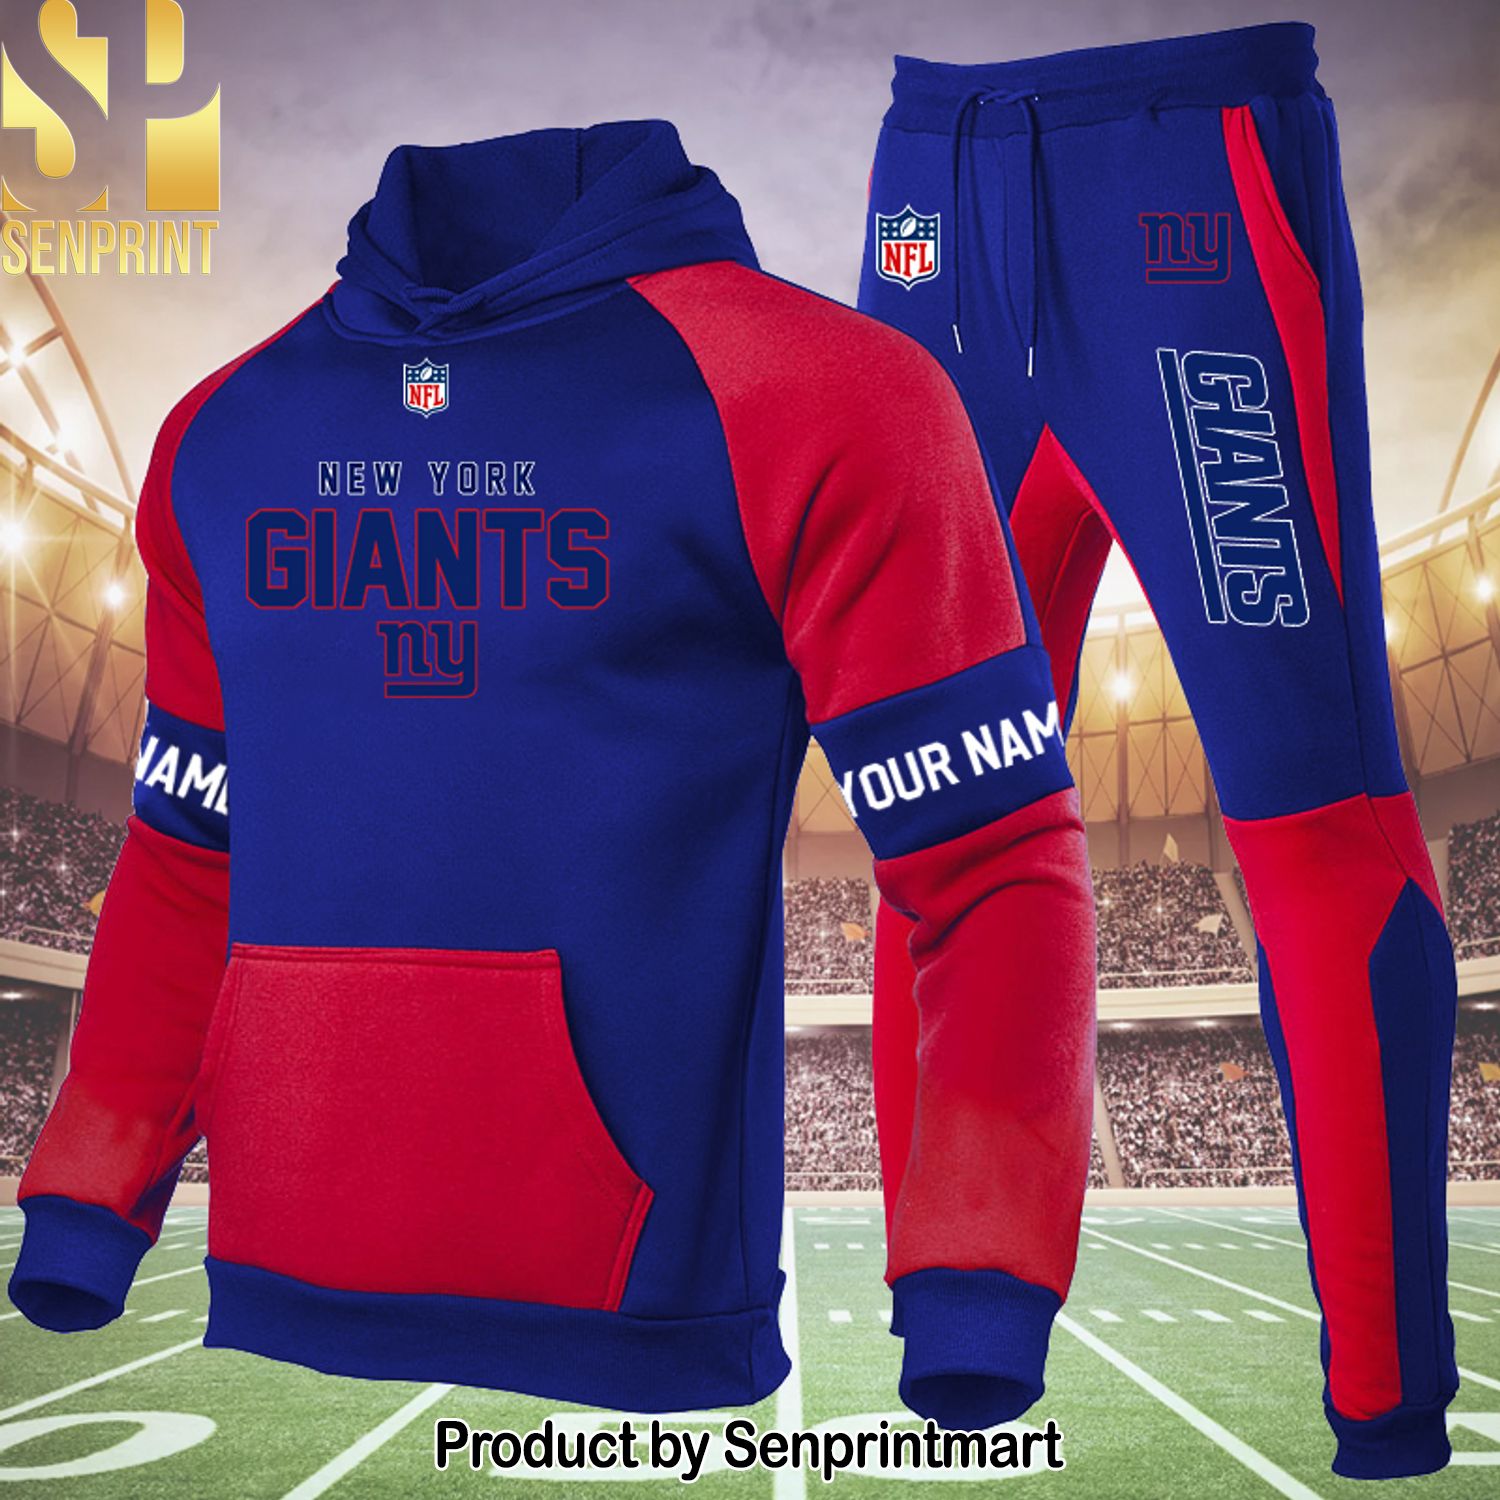 New York Giants New Fashion Shirt and Pants